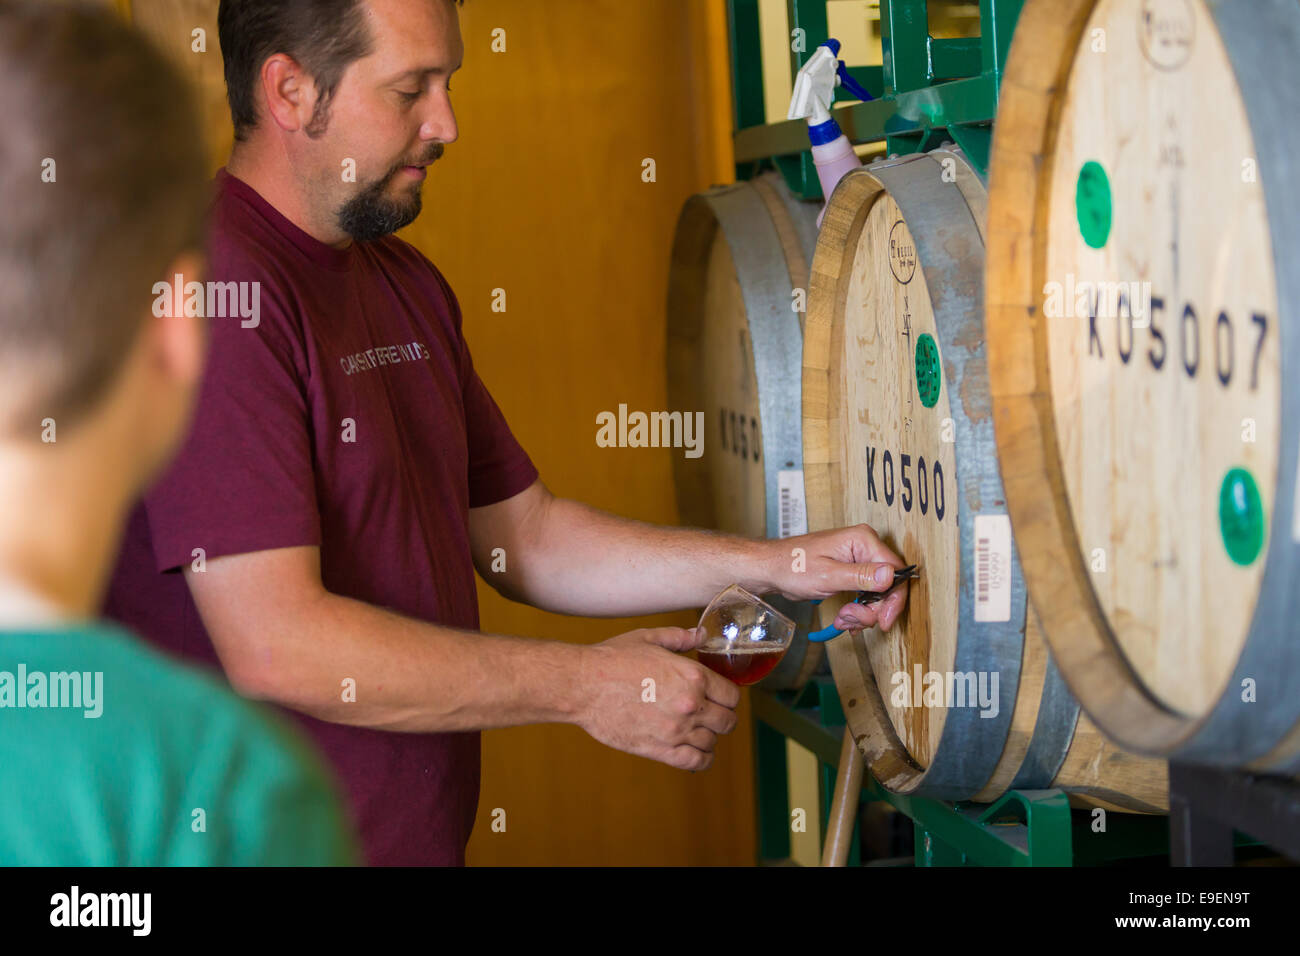 Eugene, OR, Stati Uniti d'America - Luglio 17, 2014: Master Brewer e campionamento dei dipendenti e degustazione in edizione limitata di Borbone barile di birra invecchiata a oa Foto Stock